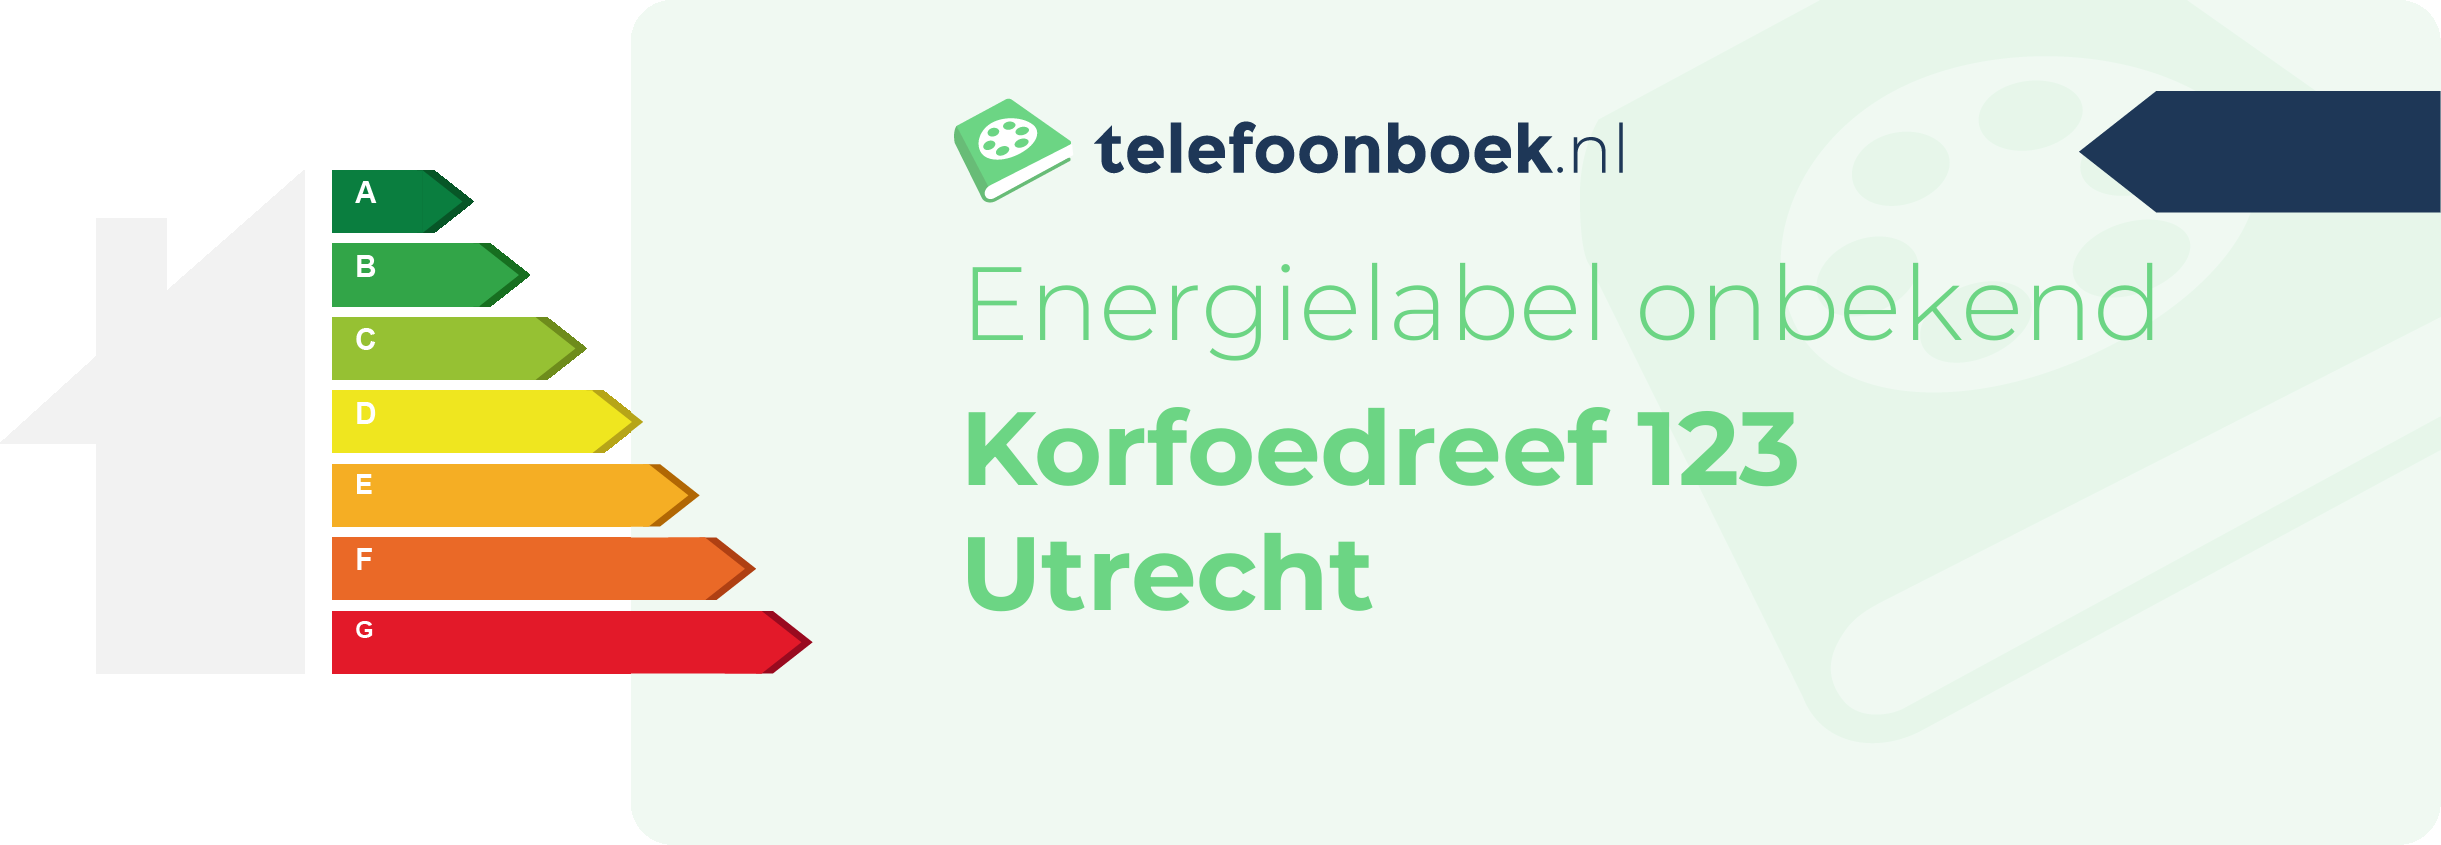 Energielabel Korfoedreef 123 Utrecht